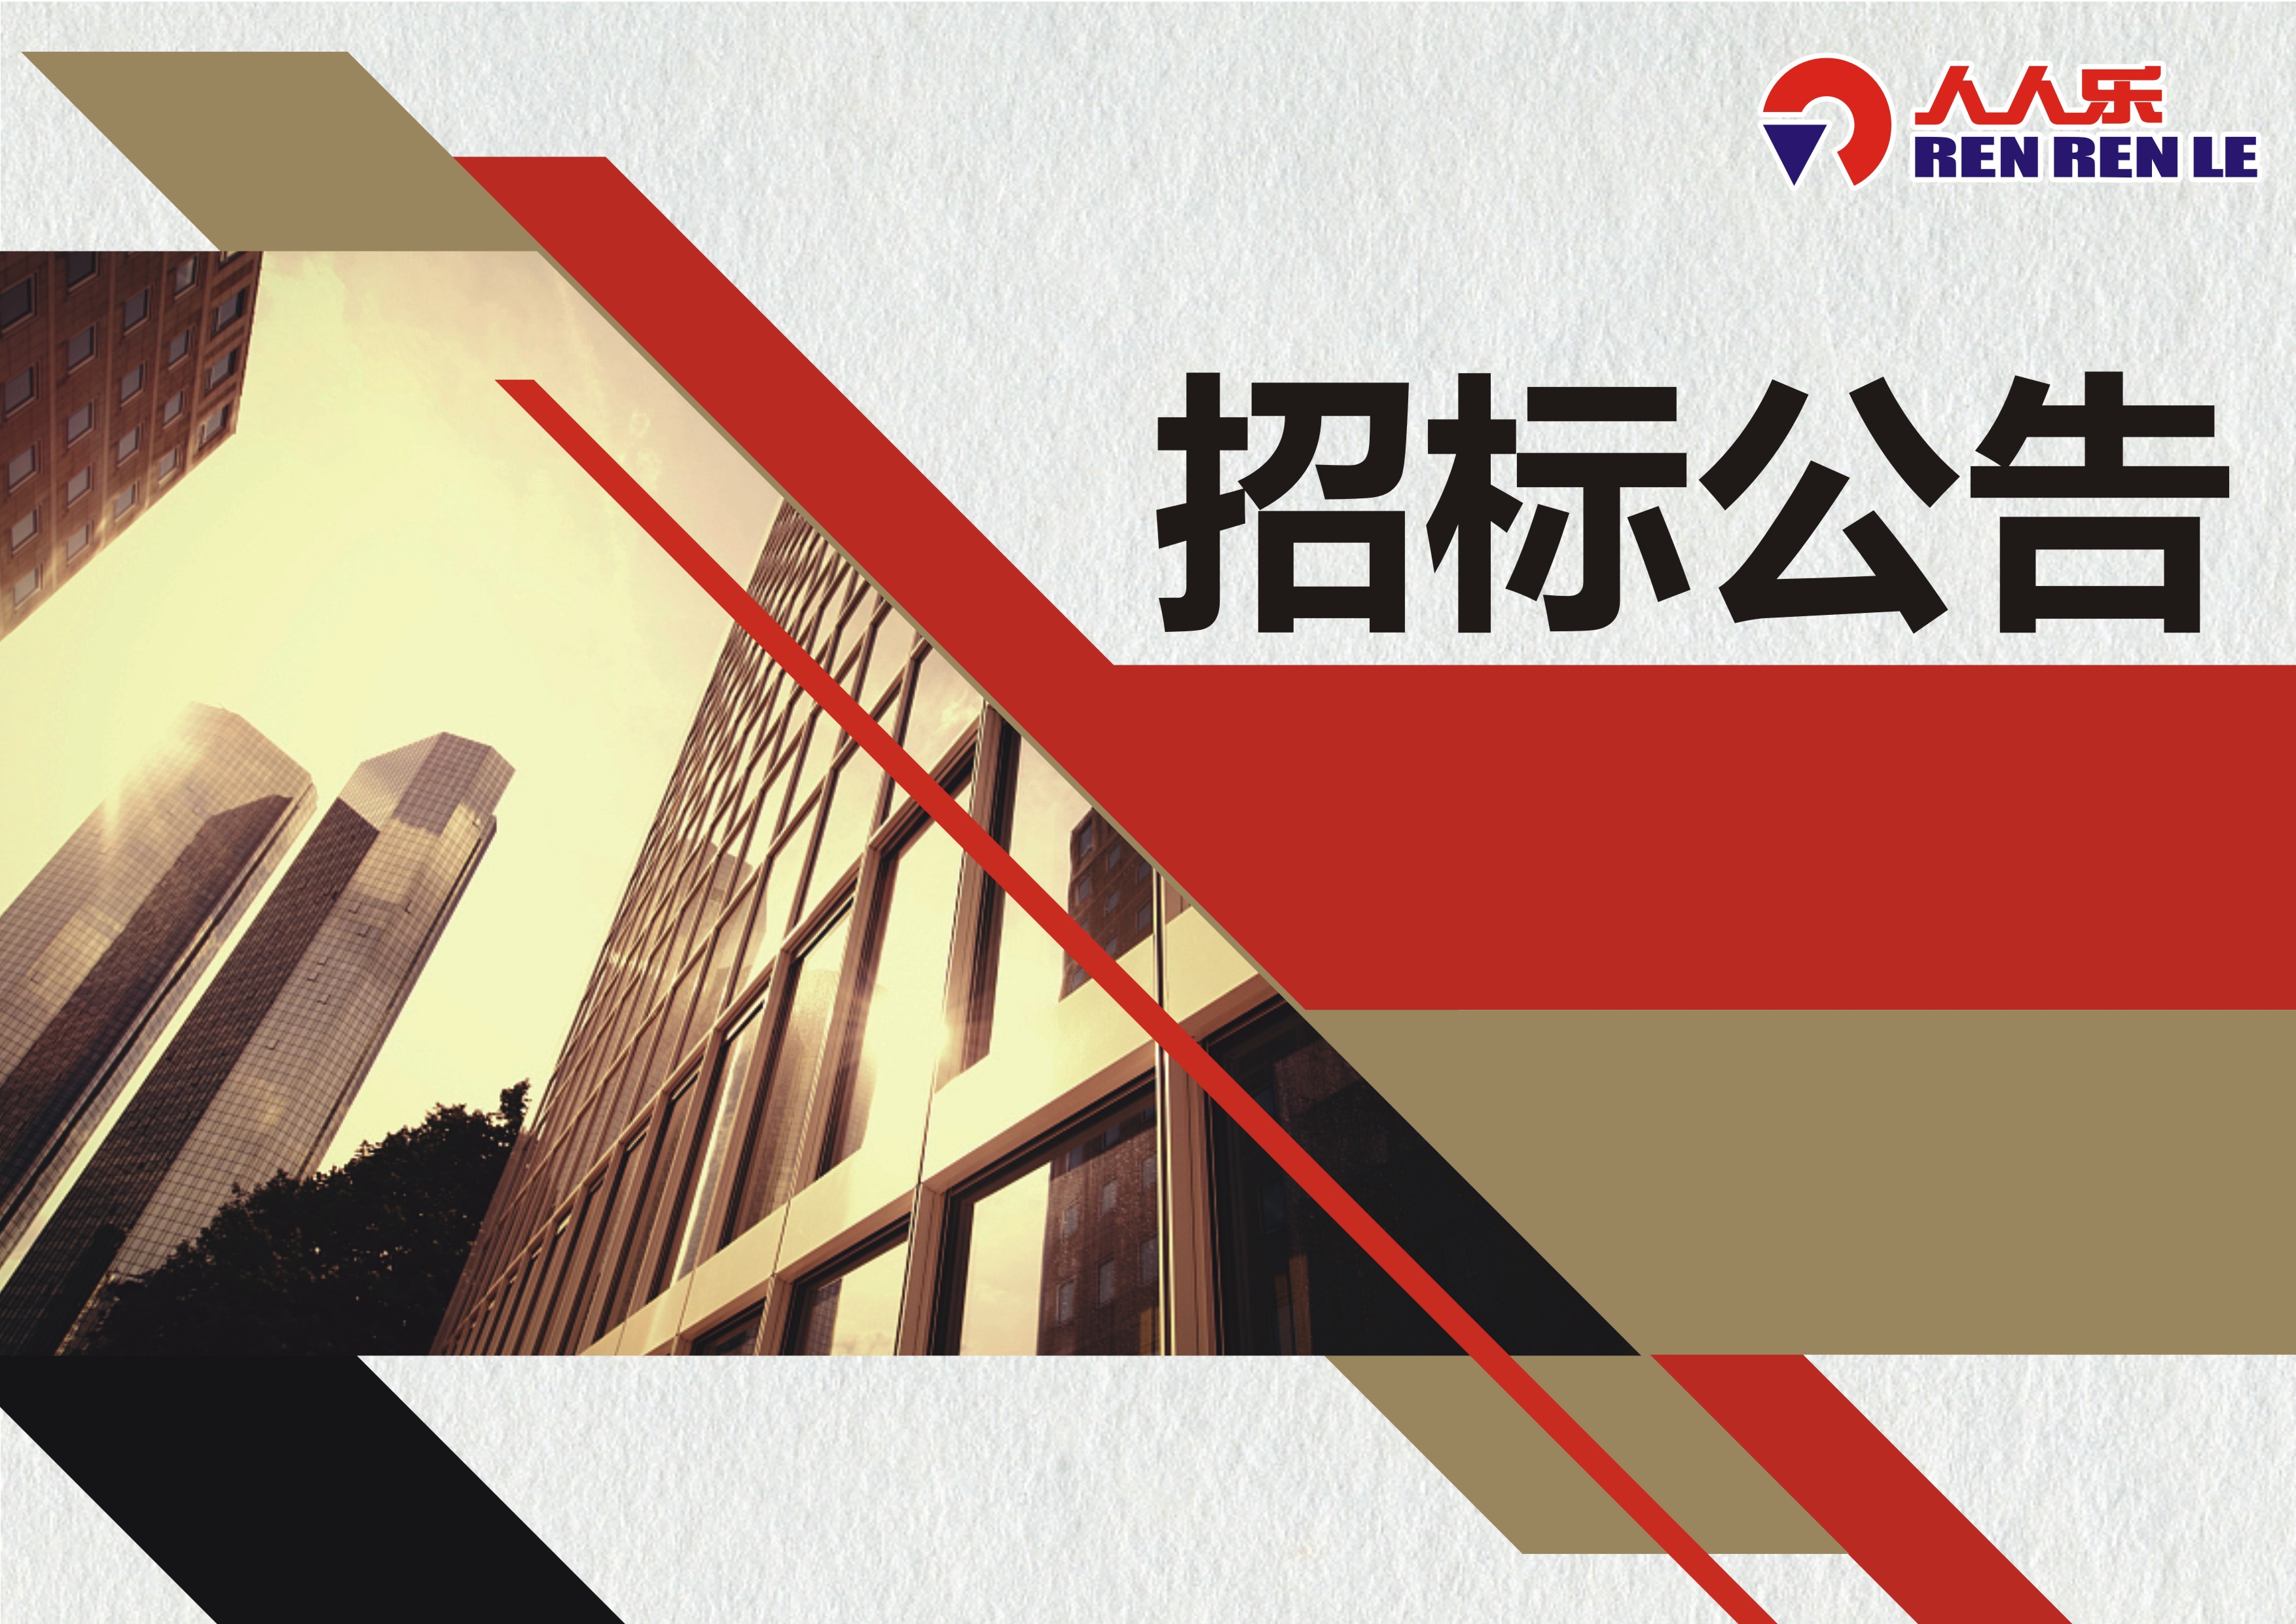  重庆市人人乐商业有限公司中央空调通风系统清洗、消毒、检测以及超市空气检测  项目招标书